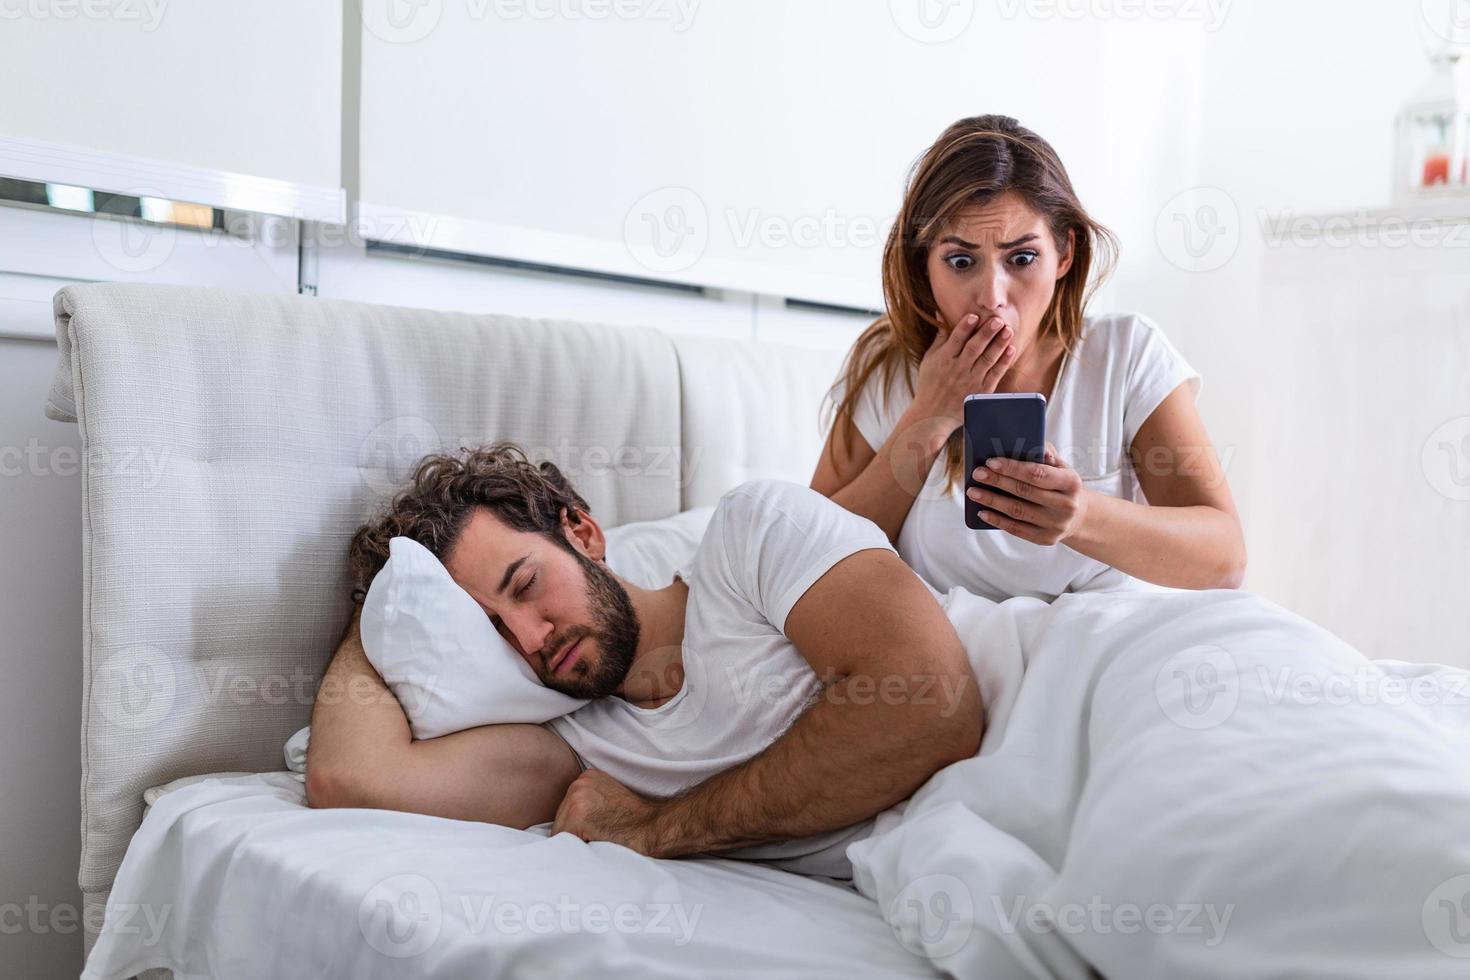 esposa ciumenta espionando o telefone de seu parceiro enquanto ele está dormindo em uma cama em casa. esposa ciumenta chocada espionando o telefone do marido enquanto o homem dormia na cama em casa foto